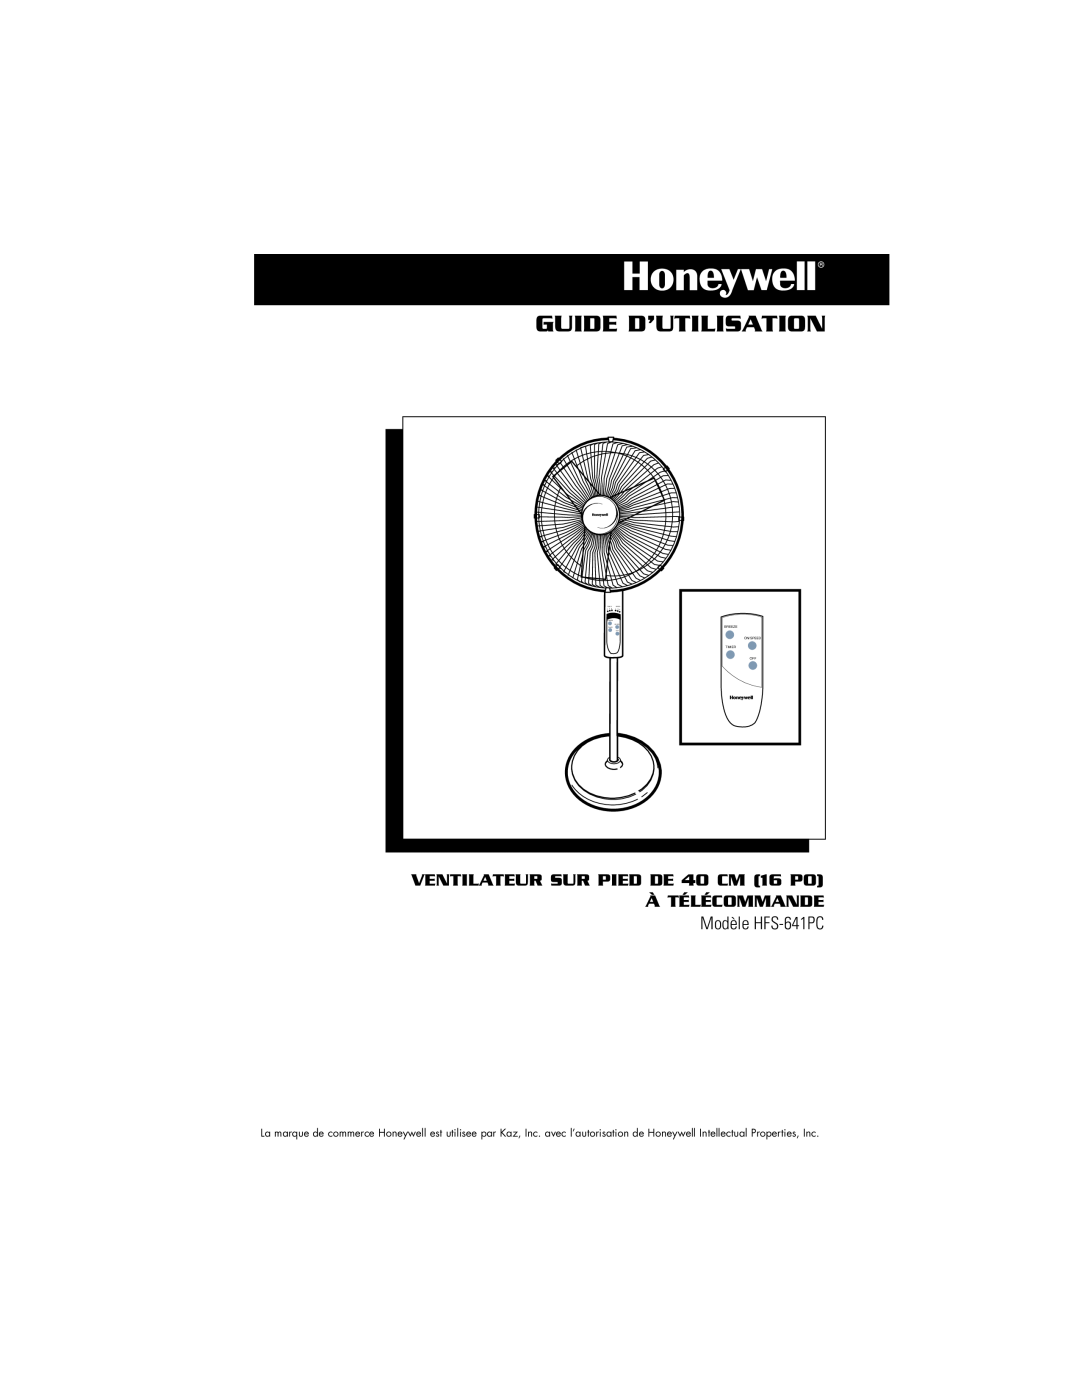 Vicks owner manual Guide D’Utilisation, VENTILATEUR SUR PIED DE 40 CM 16 PO, À Télécommande, Modèle HFS-641PC 